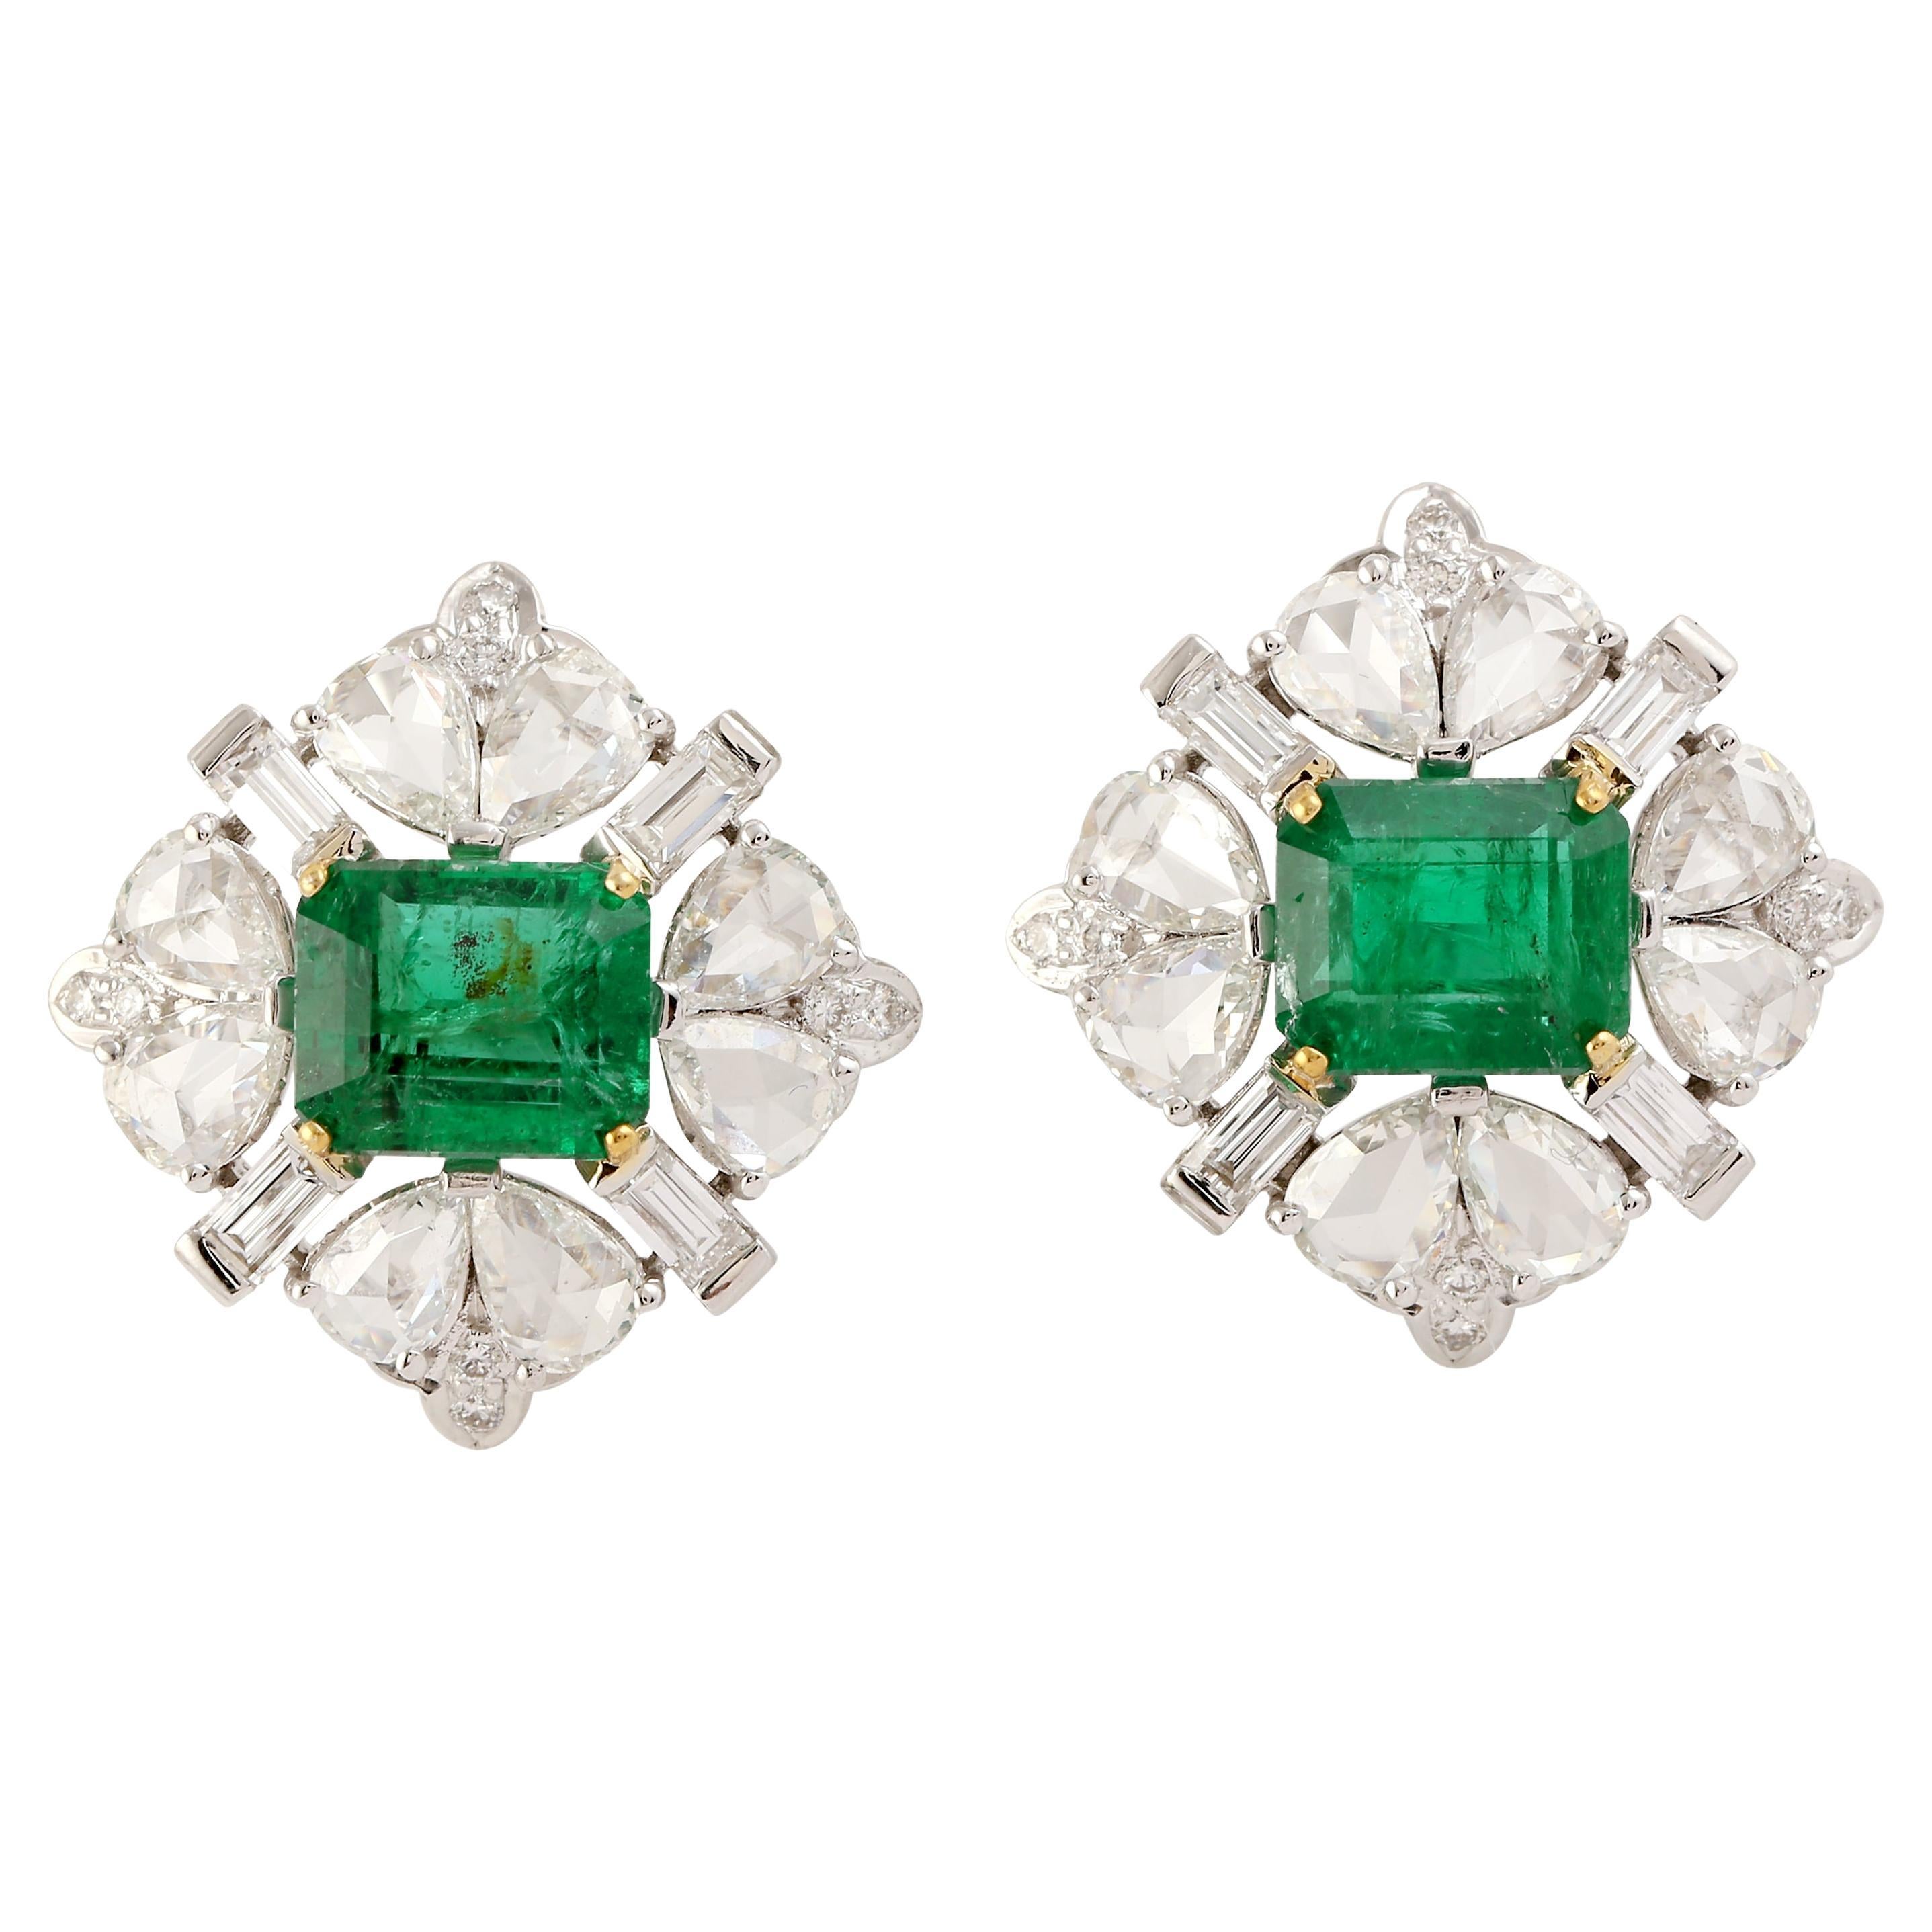 Designer Rosecut Diamant und Smaragd Ohrstecker in 18K Weißgold ist schön und kann von Tag zu Nacht getragen werden.

18KT: 7.782g
Diamant:3,86cts
Smaragd: 4,48cts